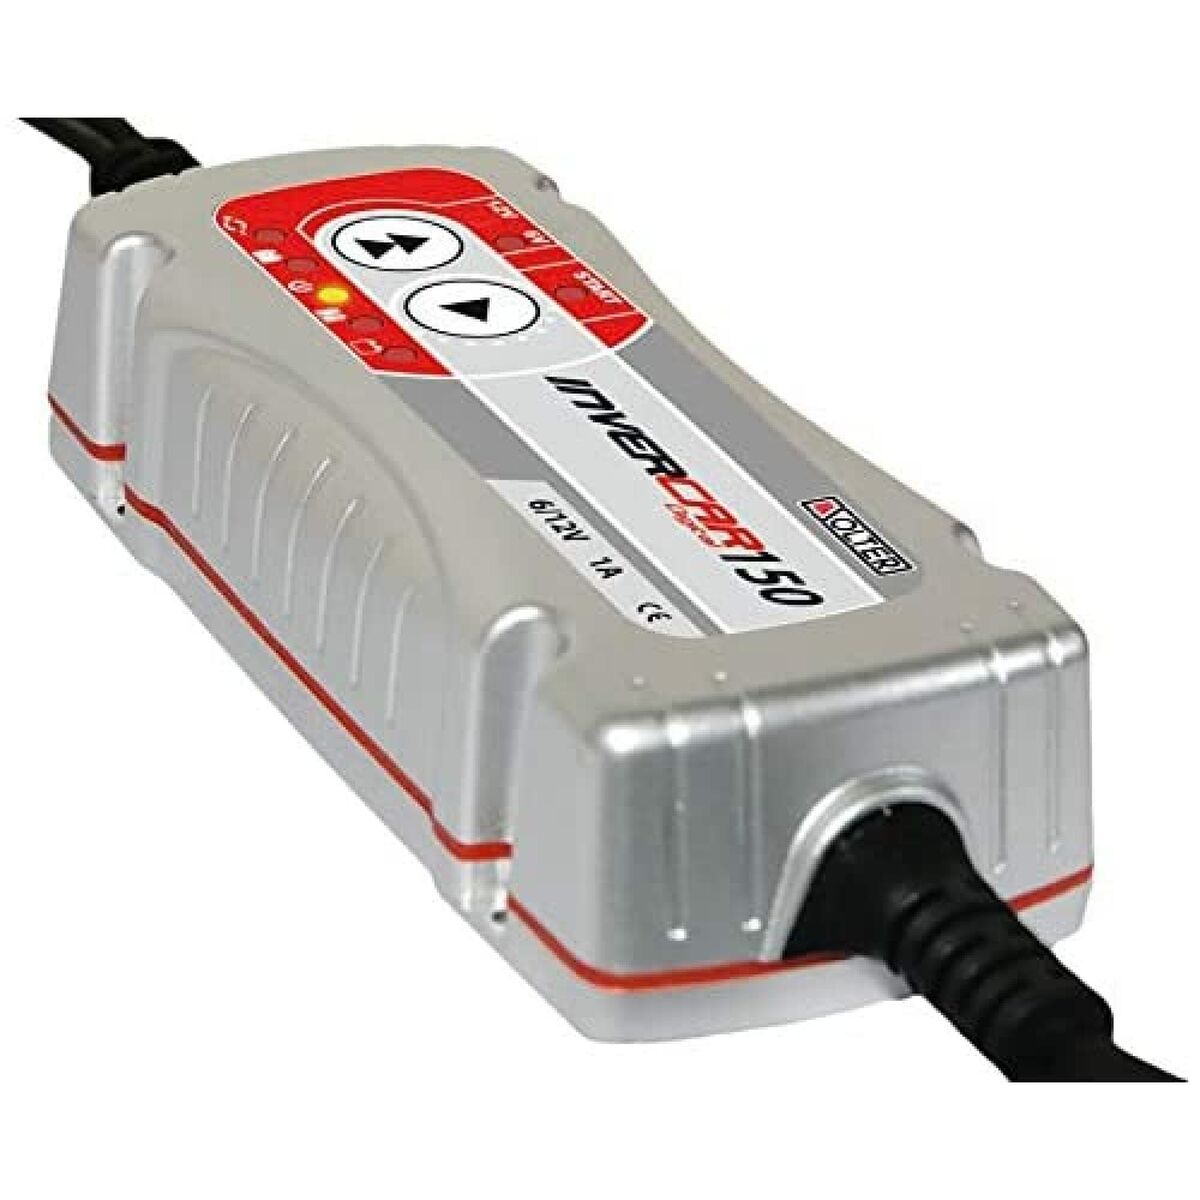 Solter Invercar 150 Batterieladegerät 1 A 6 V - 12 V